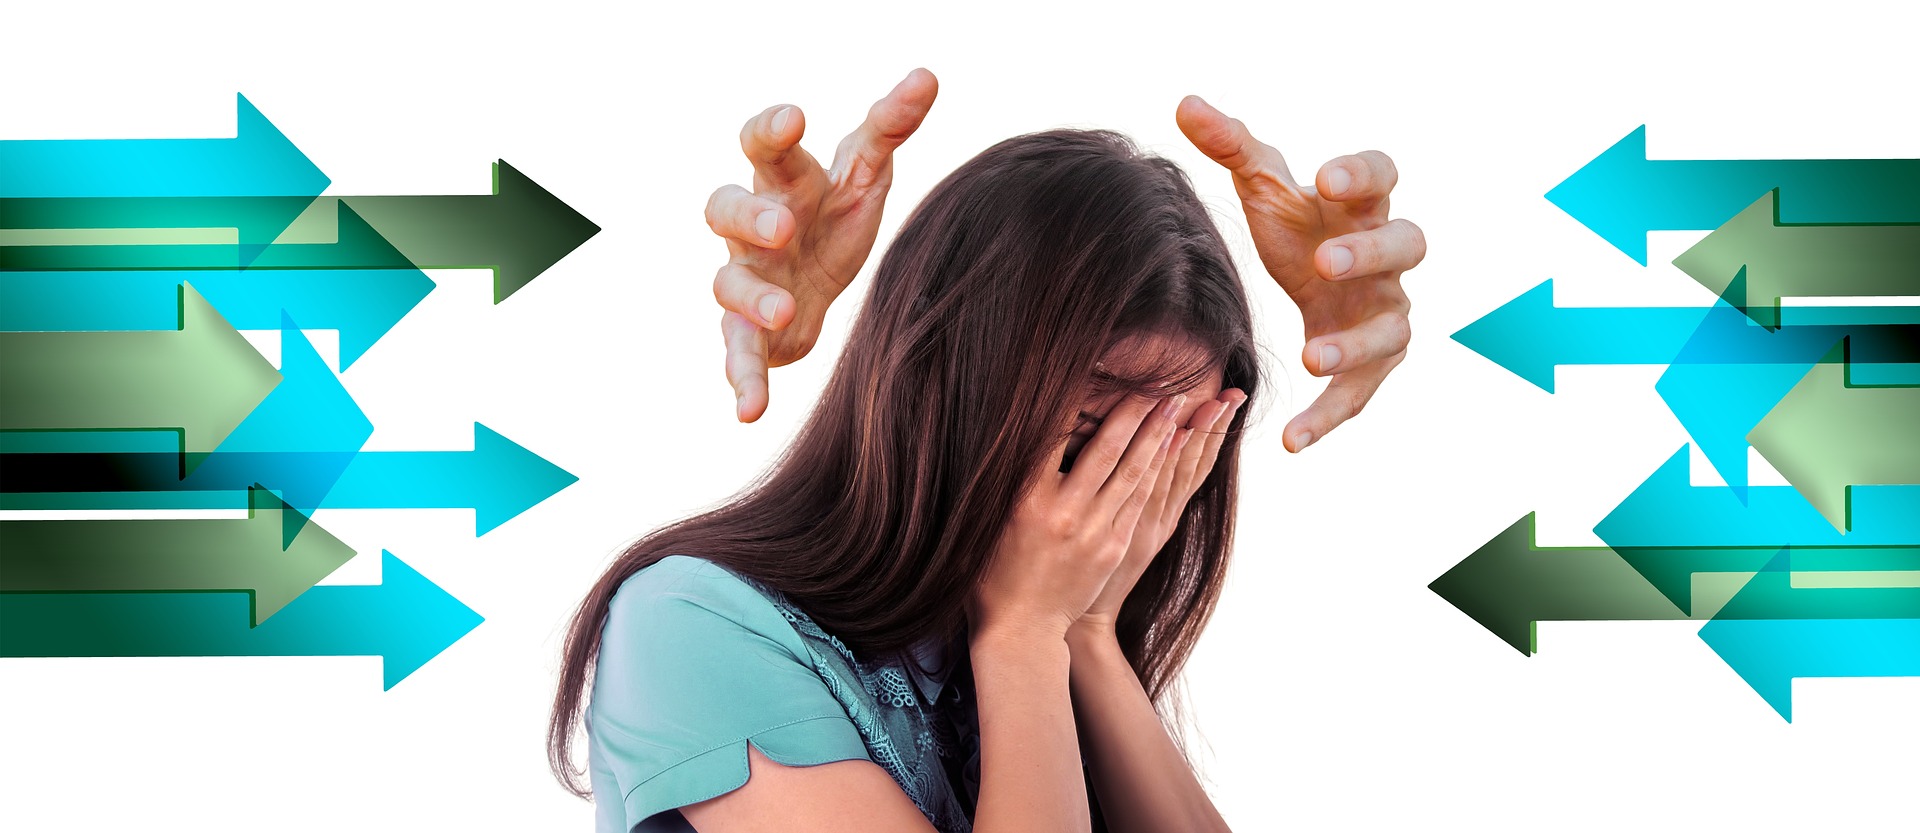 headache pain treatments - Headaches and Migraines